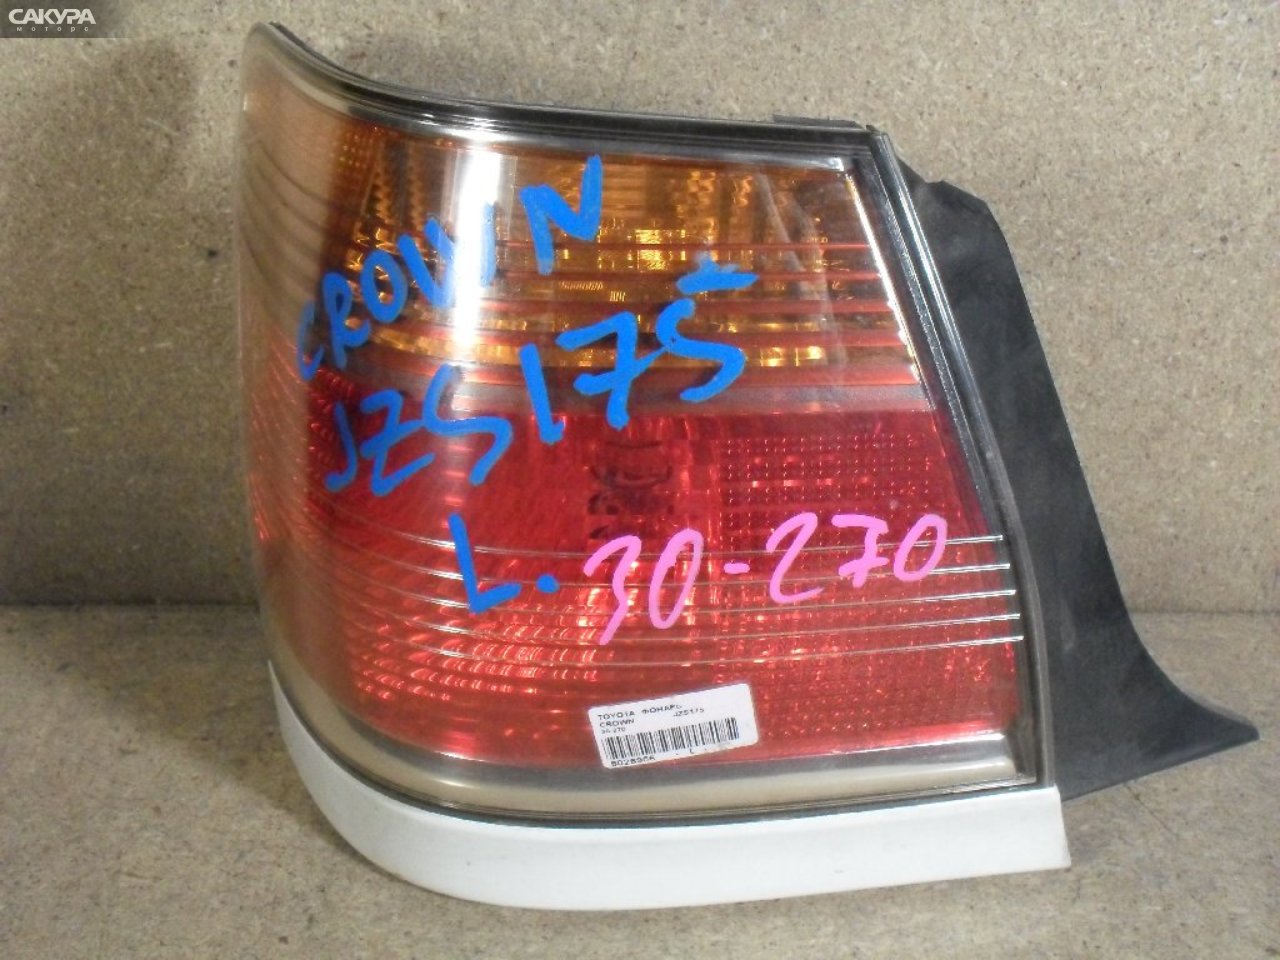 Фонарь стоп-сигнала левый Toyota Crown JZS175 30-270: купить в Сакура Абакан.